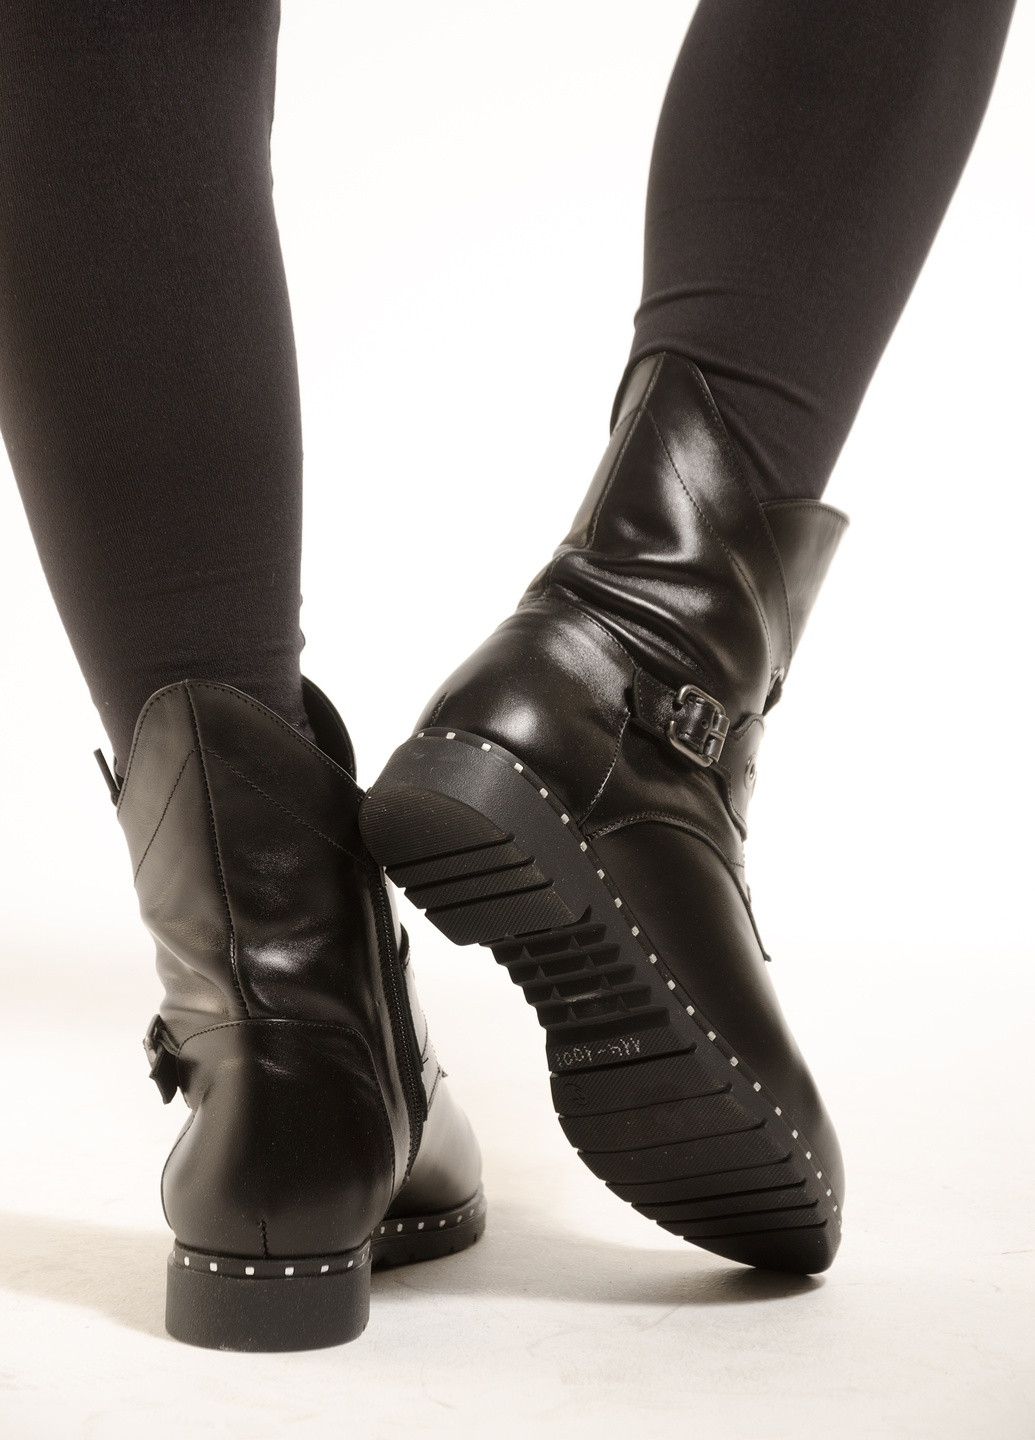 Зимние женские ботинки из натуральной кожи черного цвета хайкеры INNOE с пряжкой